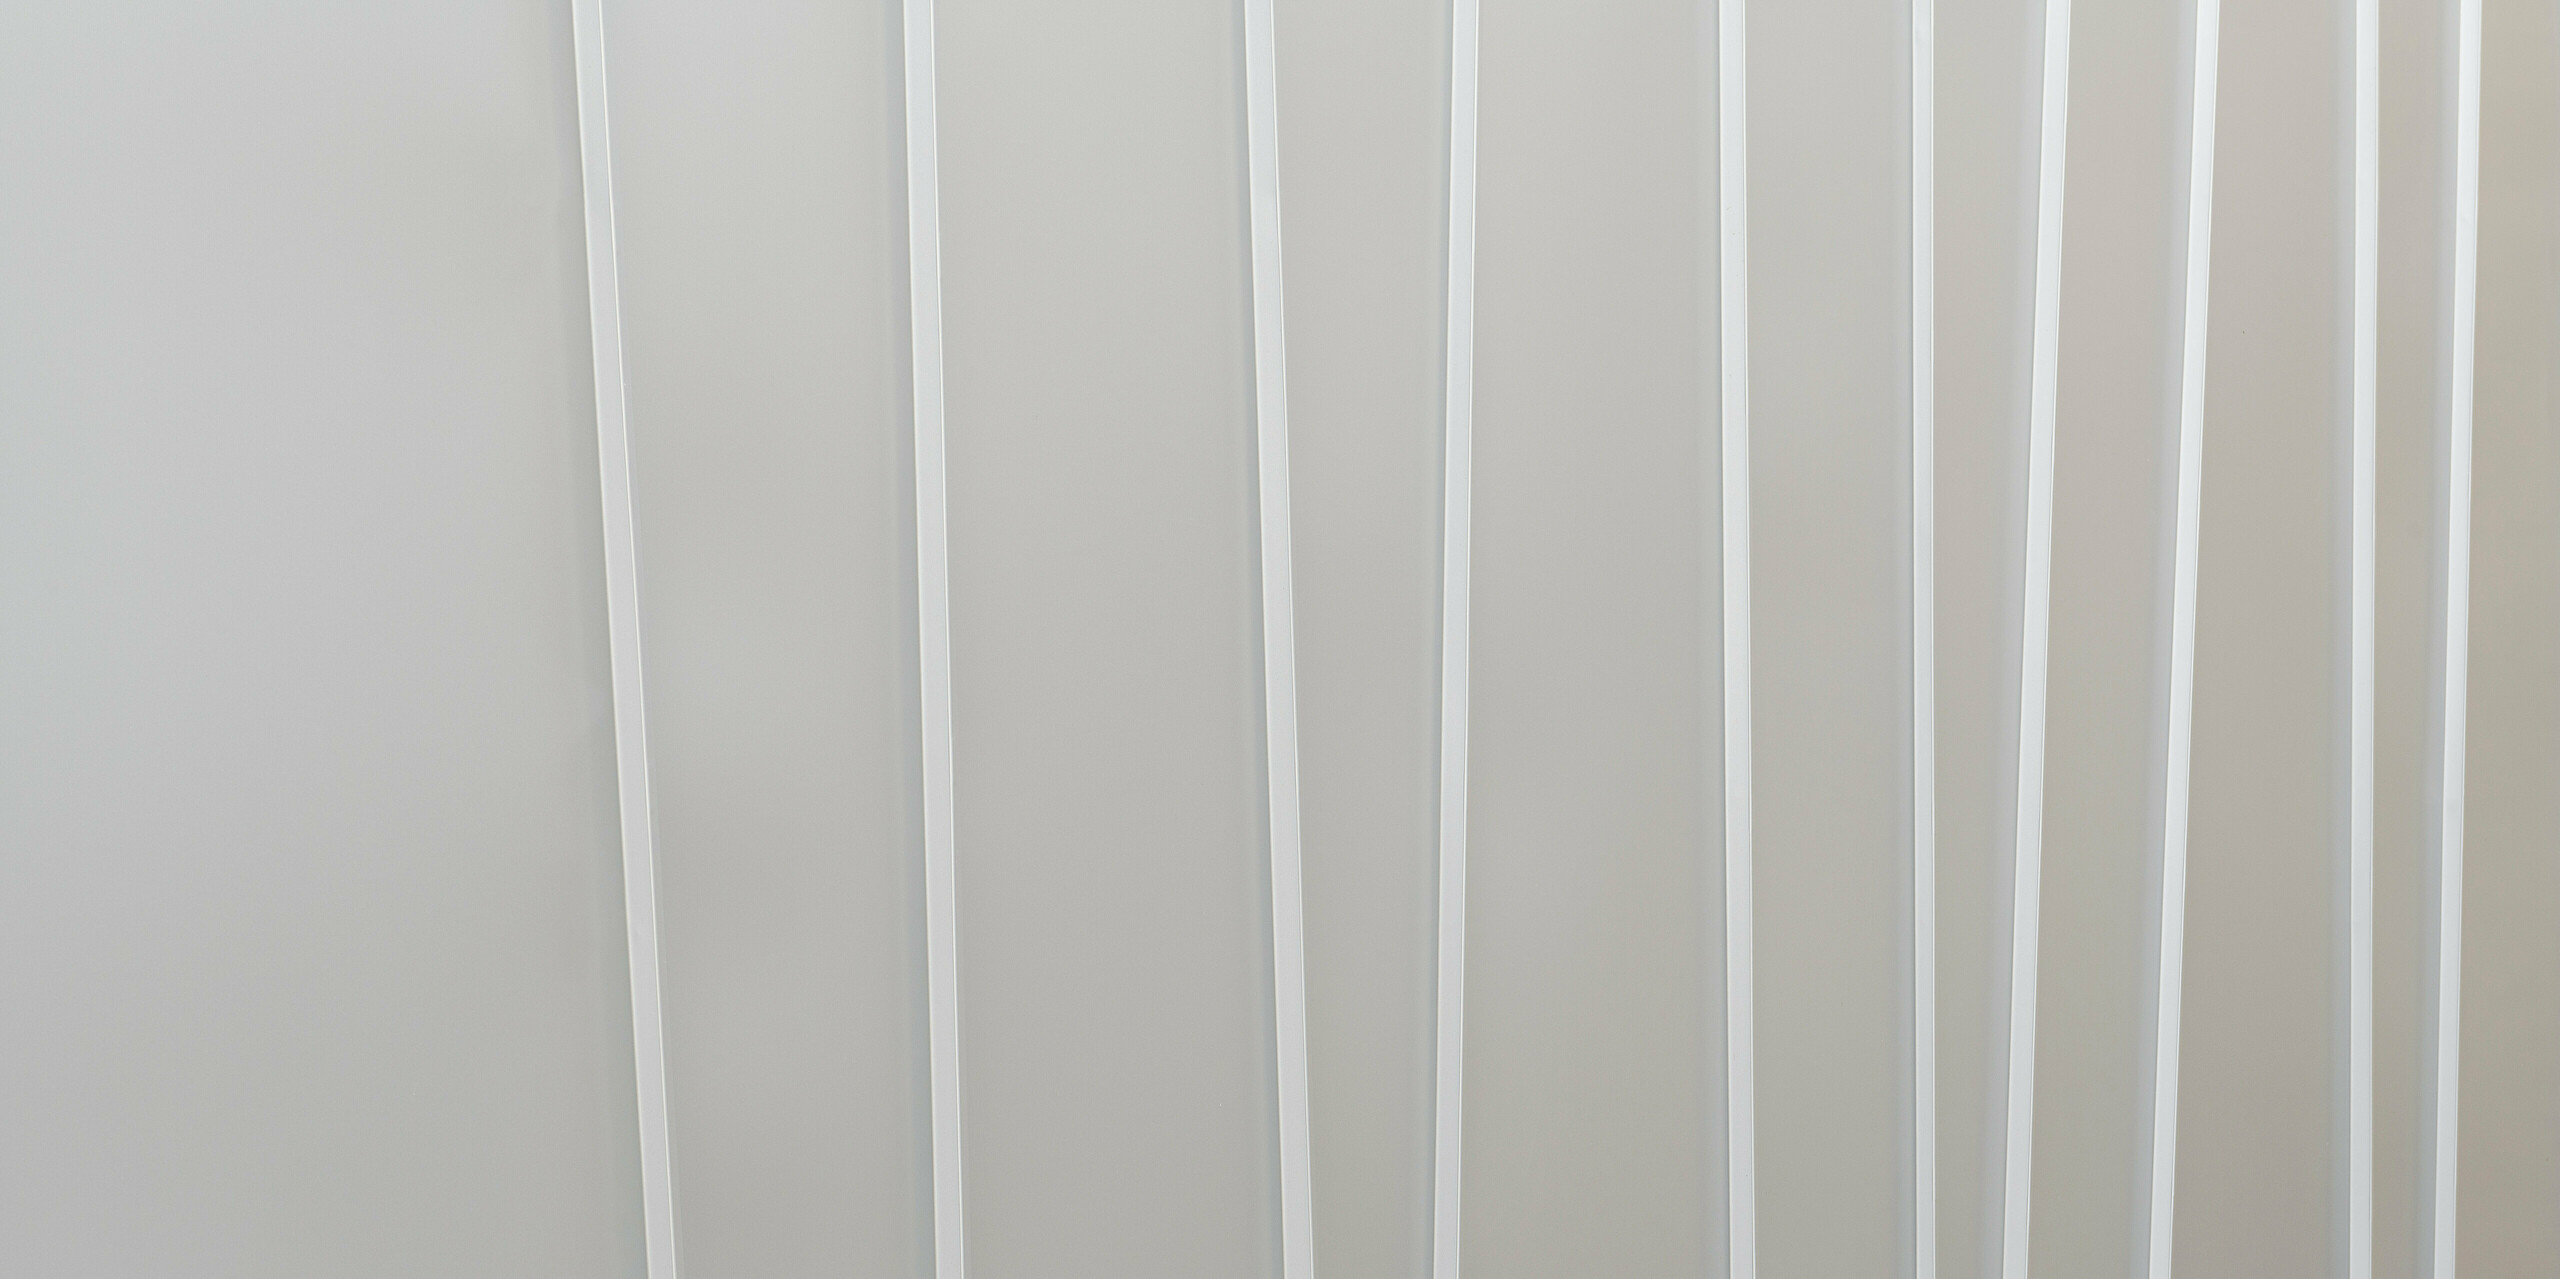 Detailní záběr na moderní fasádní systém z PREFALZ v barvě P.10 světle šedé barvě v různých šířkách pásů. Čistá a minimalistická textura navozuje pocit pořádku a současného designu.